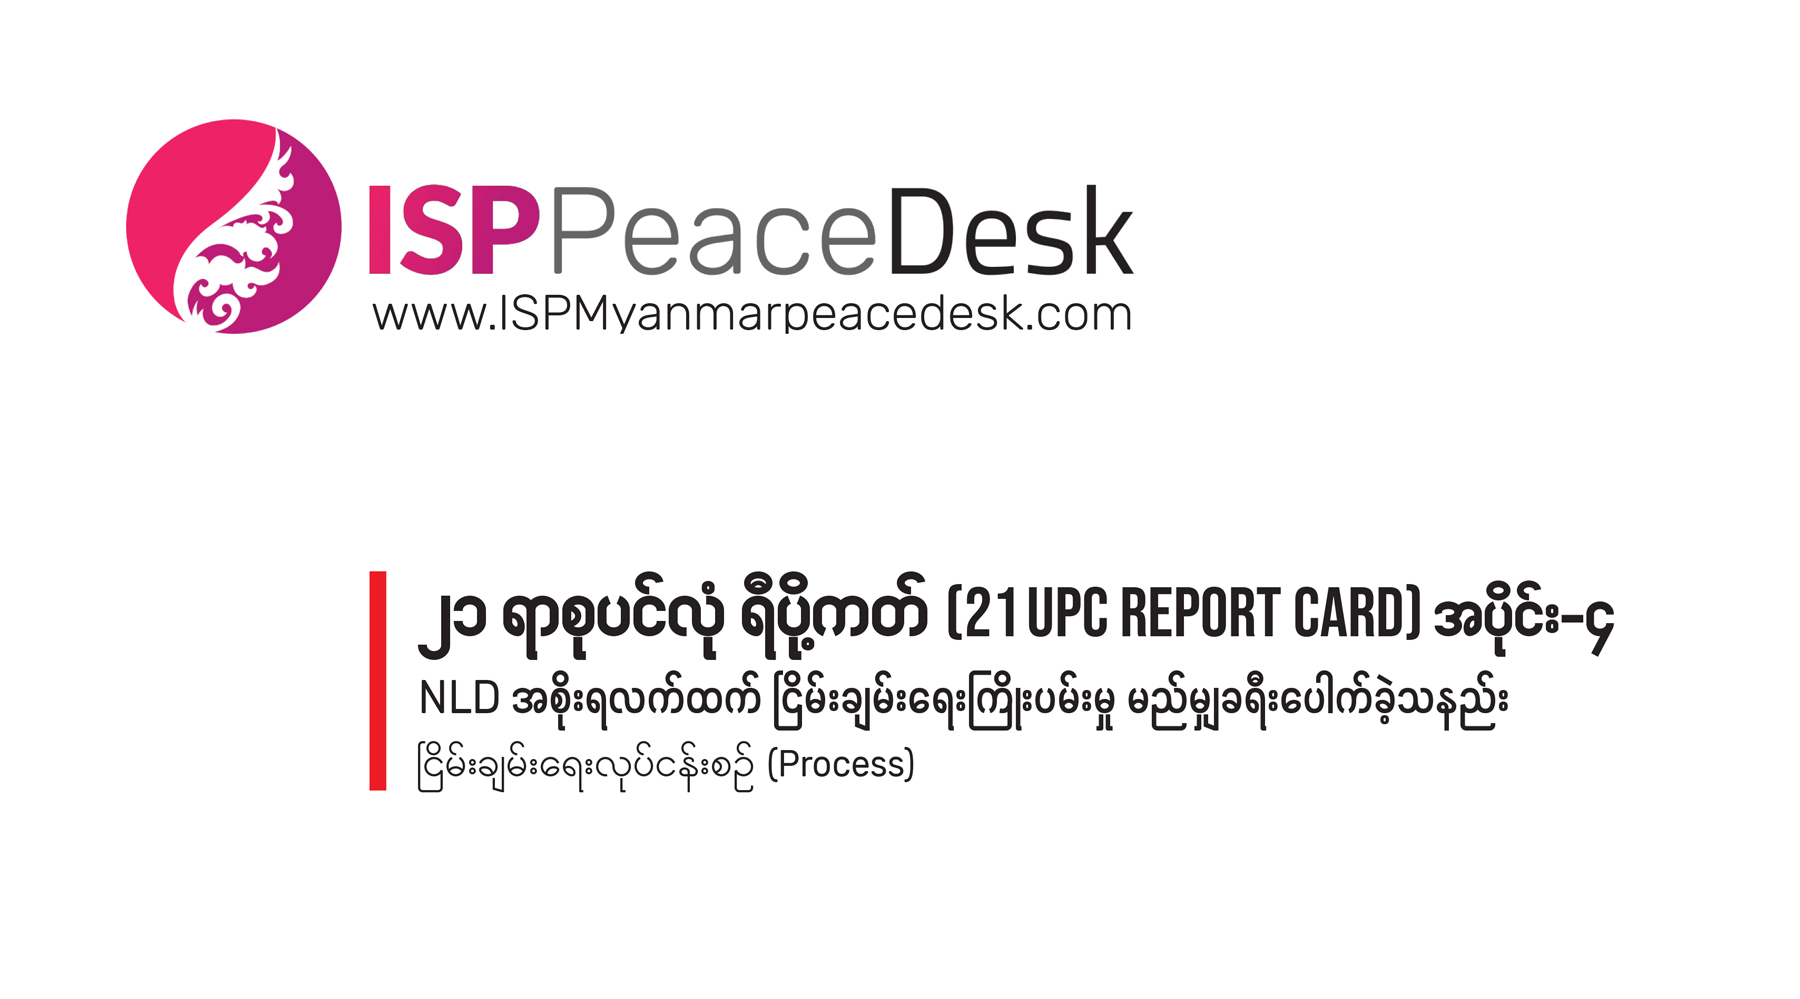 ၂၁ ရာစုပင်လုံ ရီပို့ကတ် (21 UPC Report Card) အပိုင်း-၄                        NLD အစိုးရလက်ထက် ငြိမ်းချမ်းရေးကြိုးပမ်းမှု မည်မျှ ခရီးပေါက်ခဲ့သနည်း